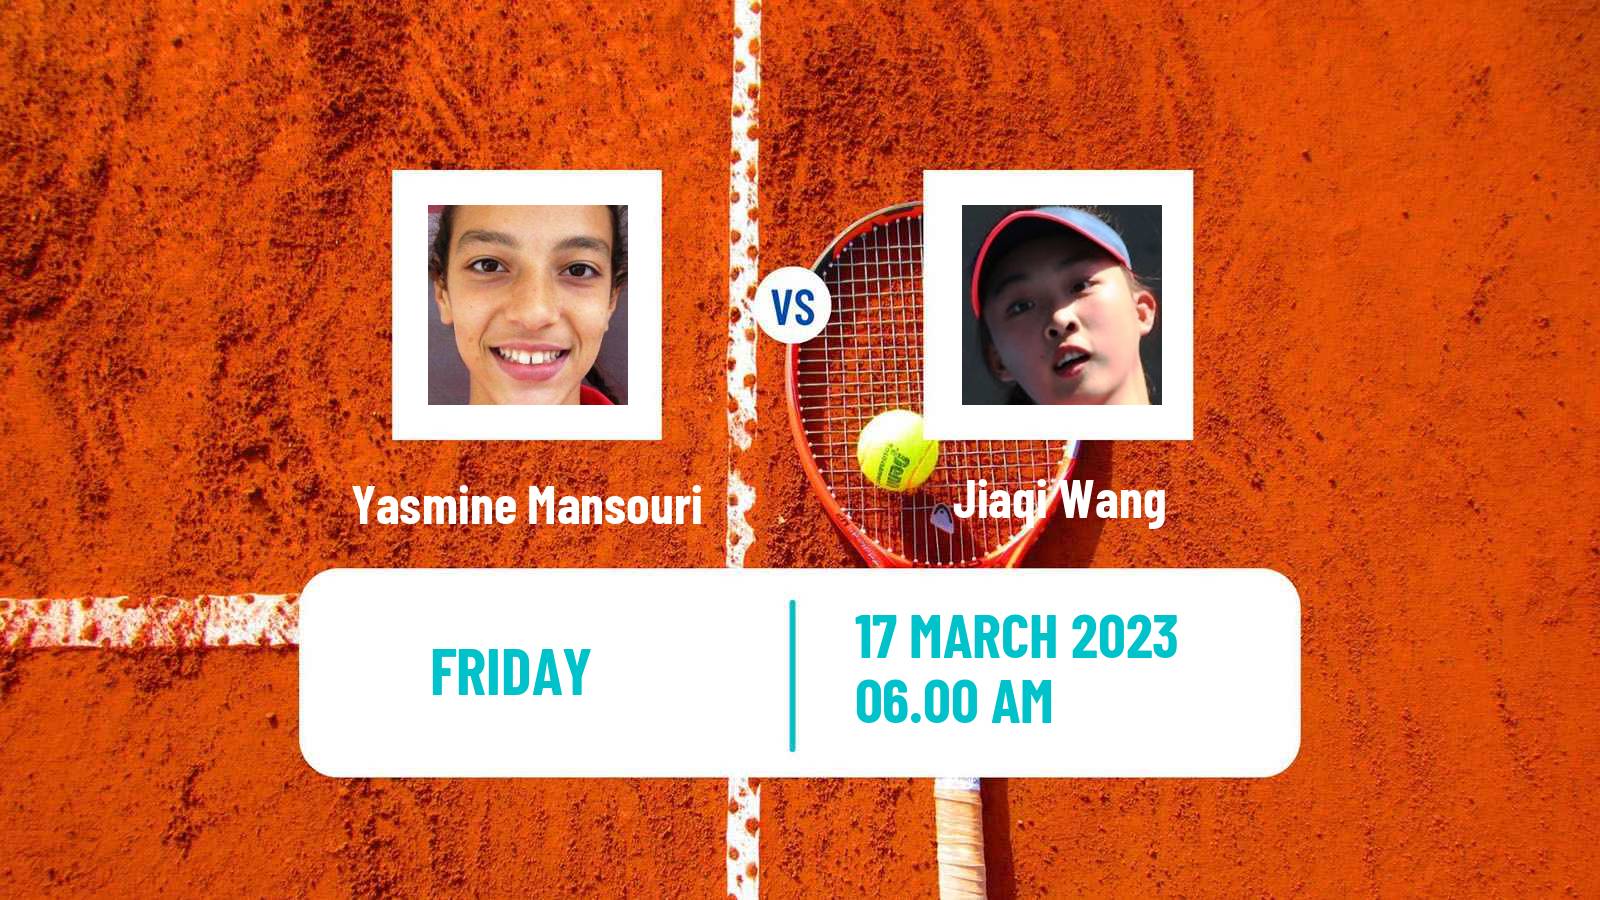 Tennis ITF Tournaments Yasmine Mansouri - Jiaqi Wang